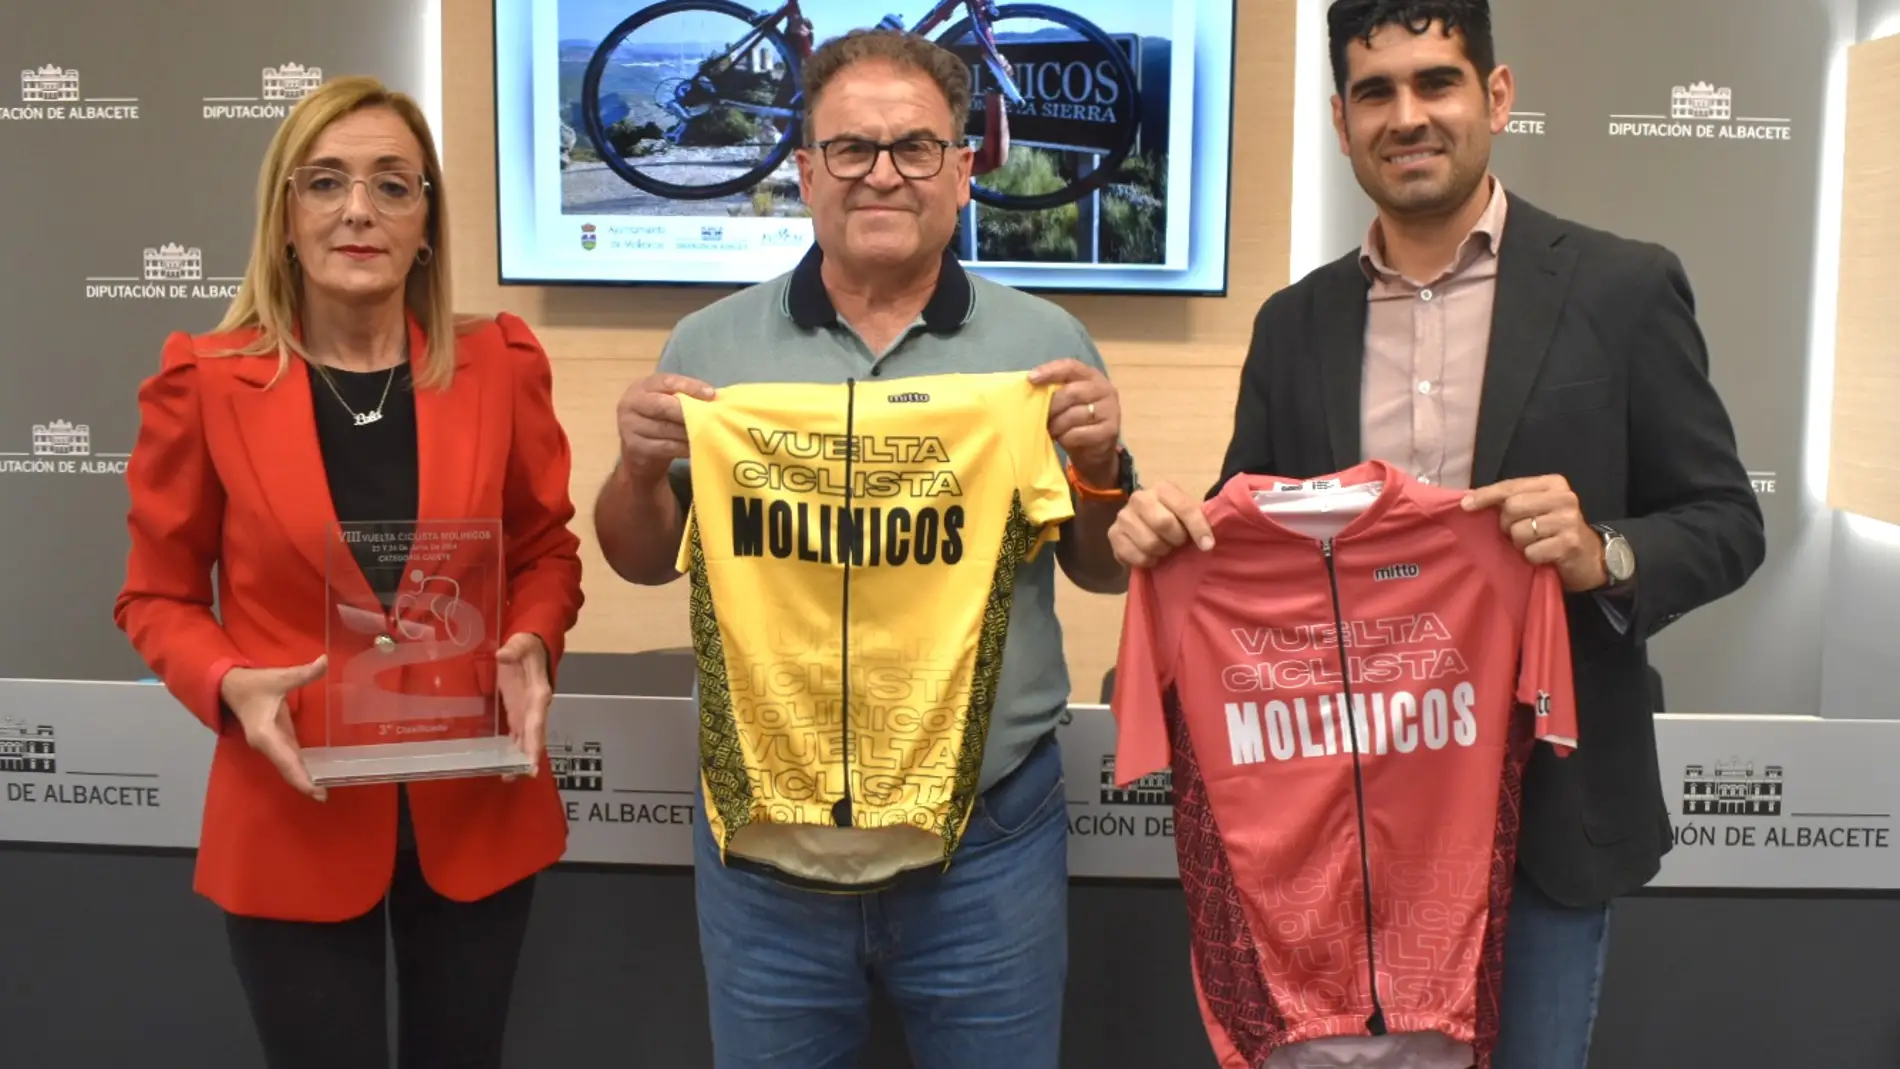 La VIII ‘Vuelta Ciclista Molinicos Categoría Cadetes’ se celebrará el 22 y 23 de junio 